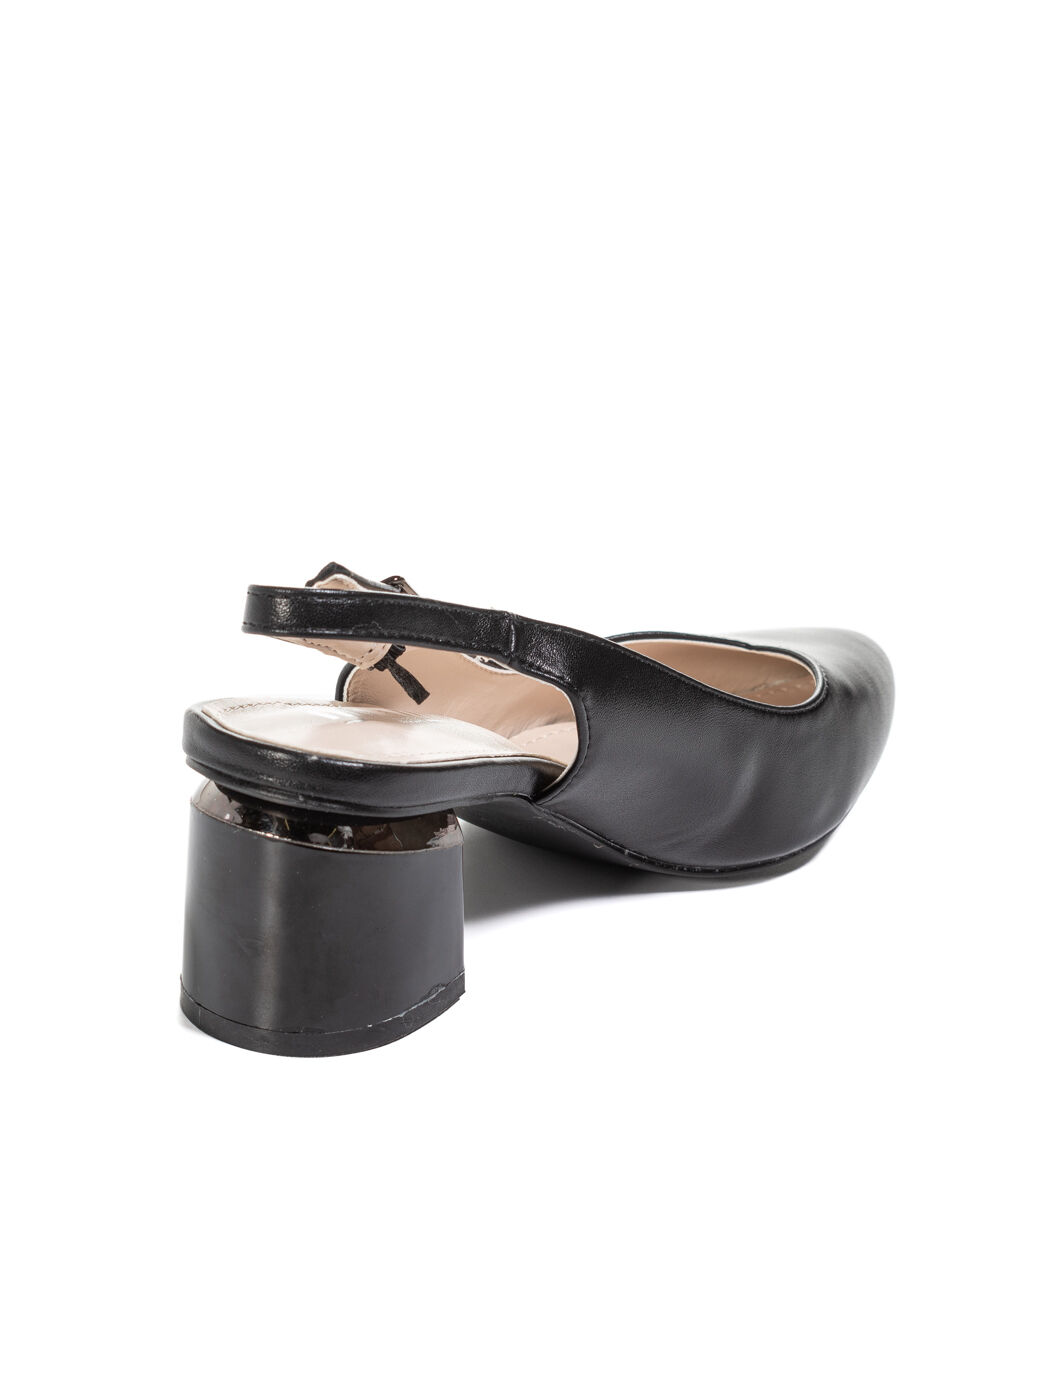 Туфли женские черные экокожа каблук устойчивый лето от производителя BM вид 1